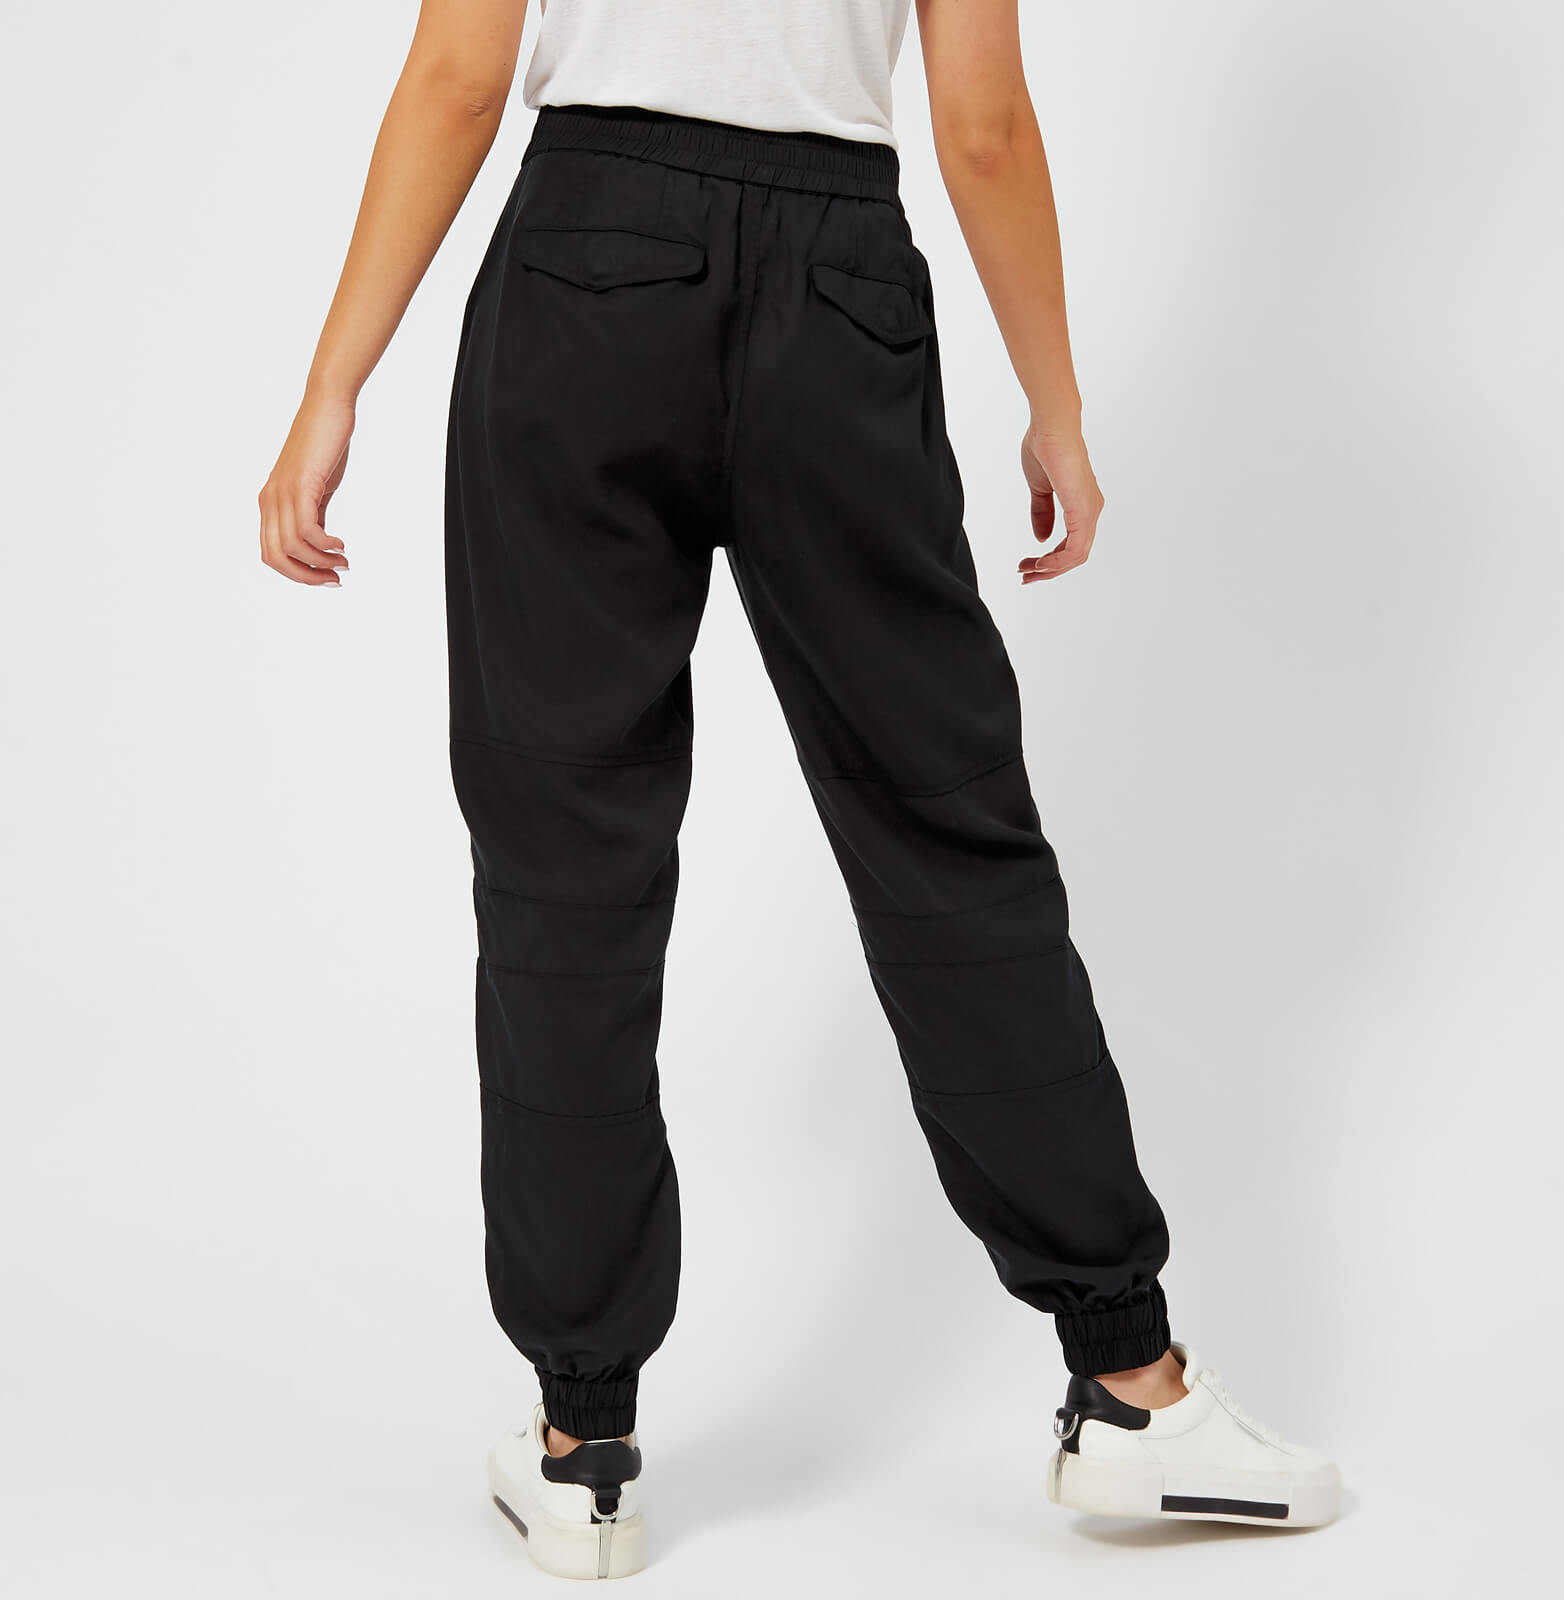 Lauren Ralph Lauren Khaki Cargo Pants Womens 2 Black Adjustable